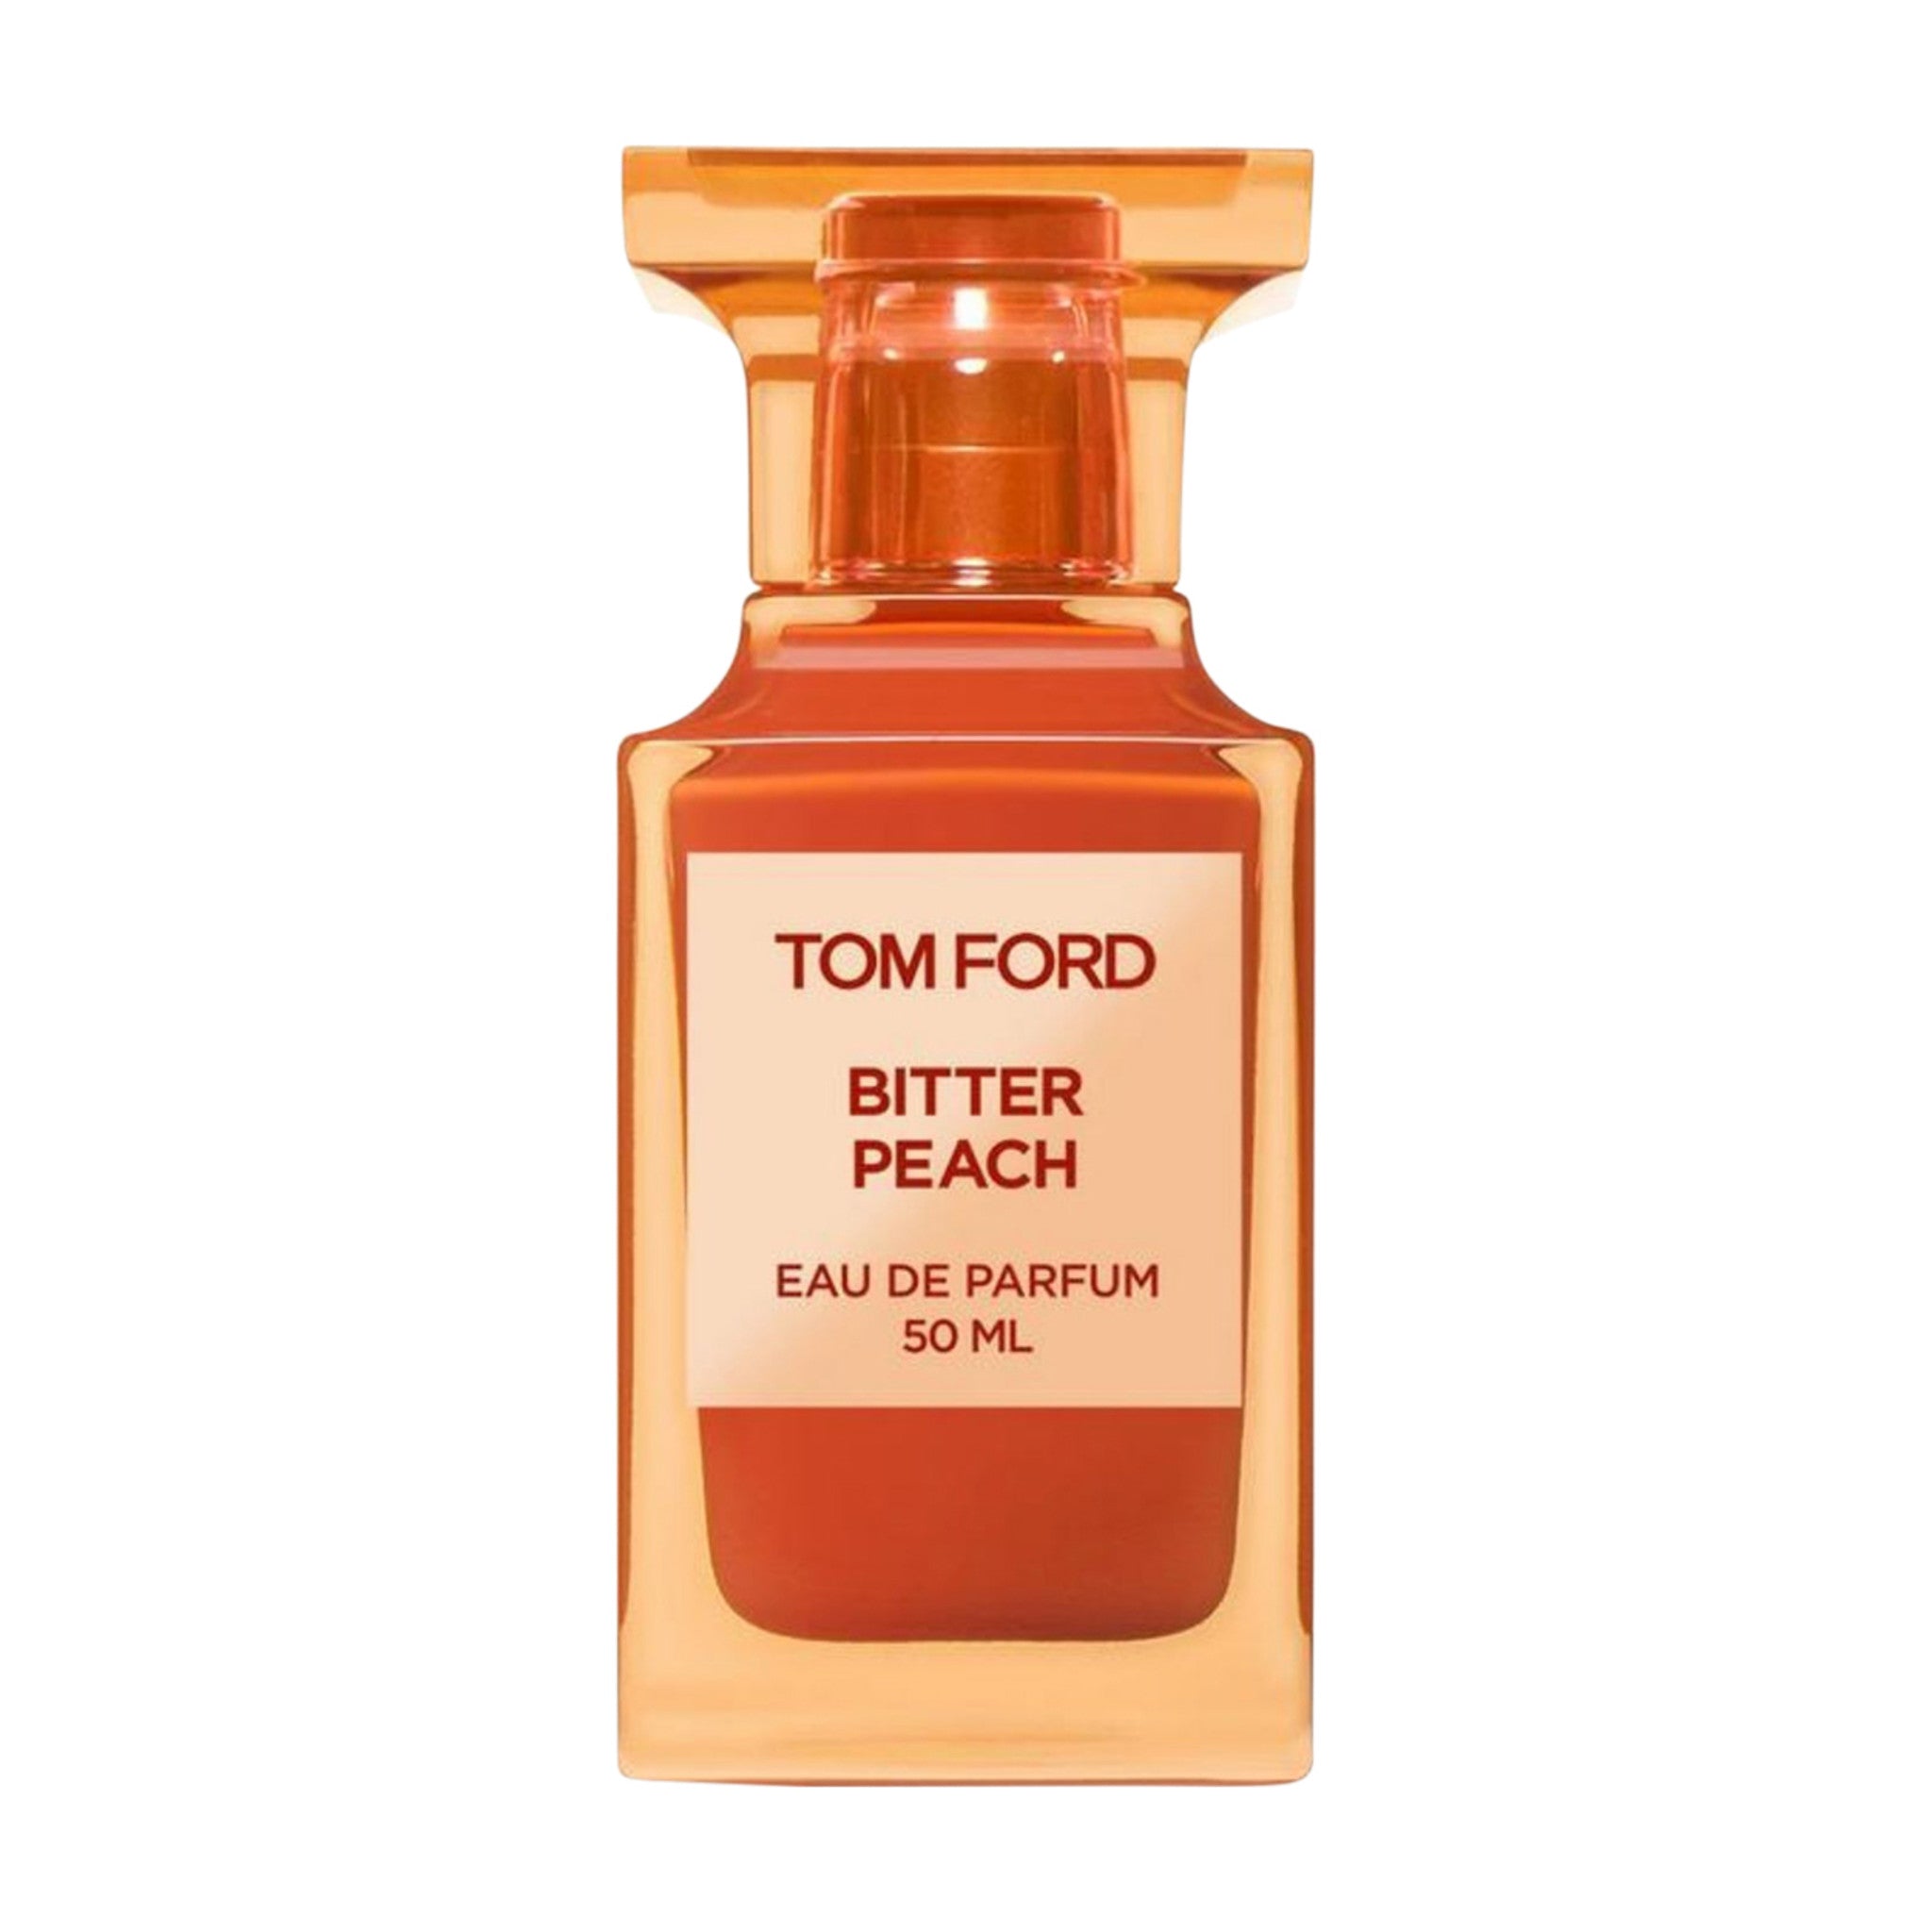 Tom Ford Bitter Peach Eau de Parfum Size variant: 1.7 fl oz  main image.